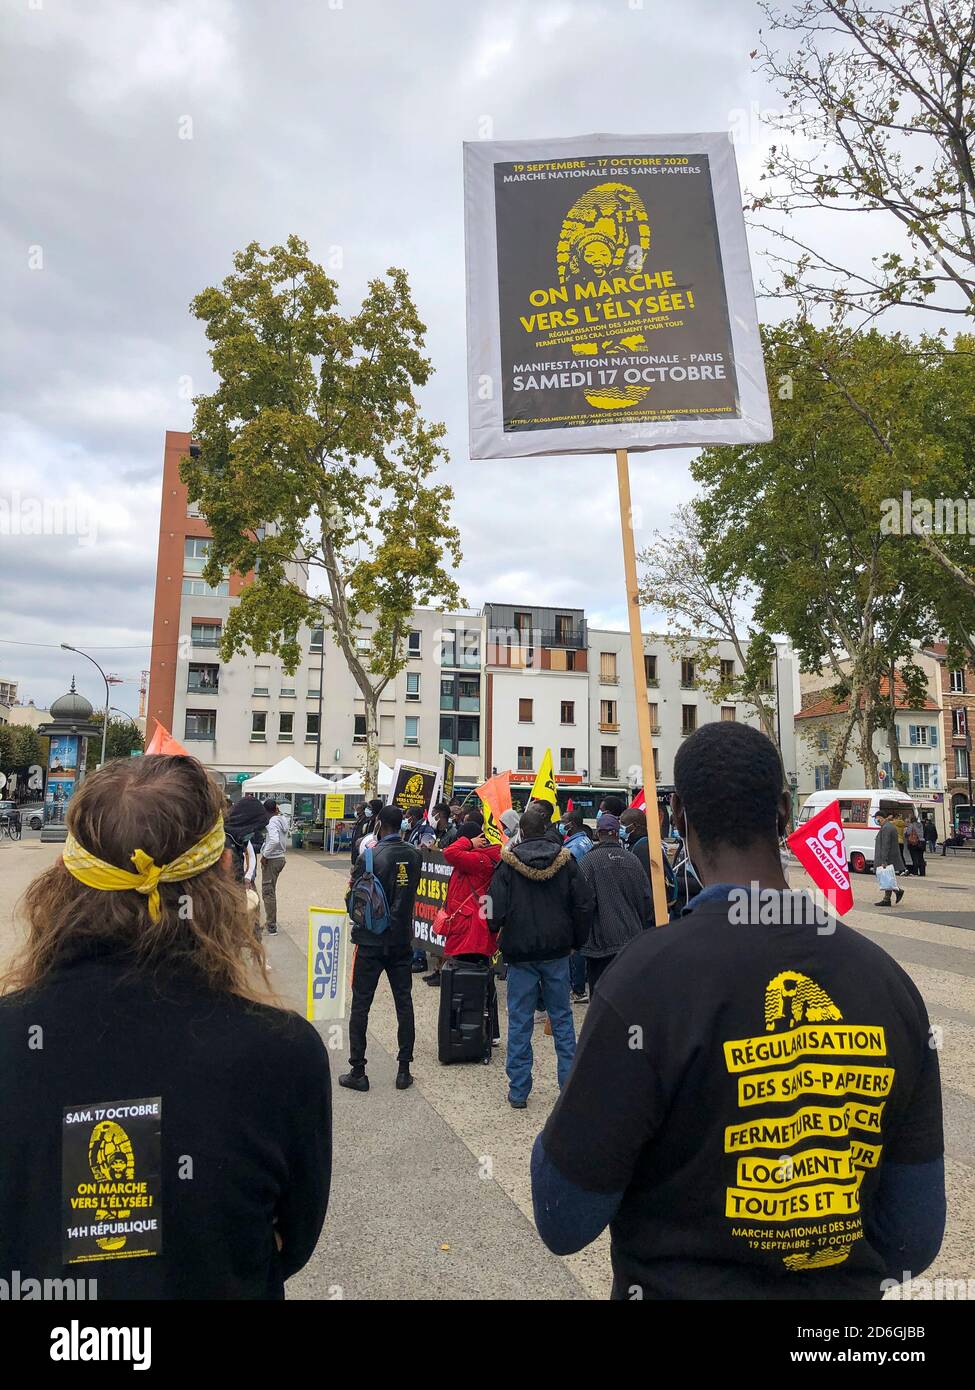 Montreuil, Frankreich, afrikanische Migranten, Sans Papiers, Protest für ihre Rechte, Internationale Einwanderer, illegale Ausländer, undokumentierte Menschen Stockfoto